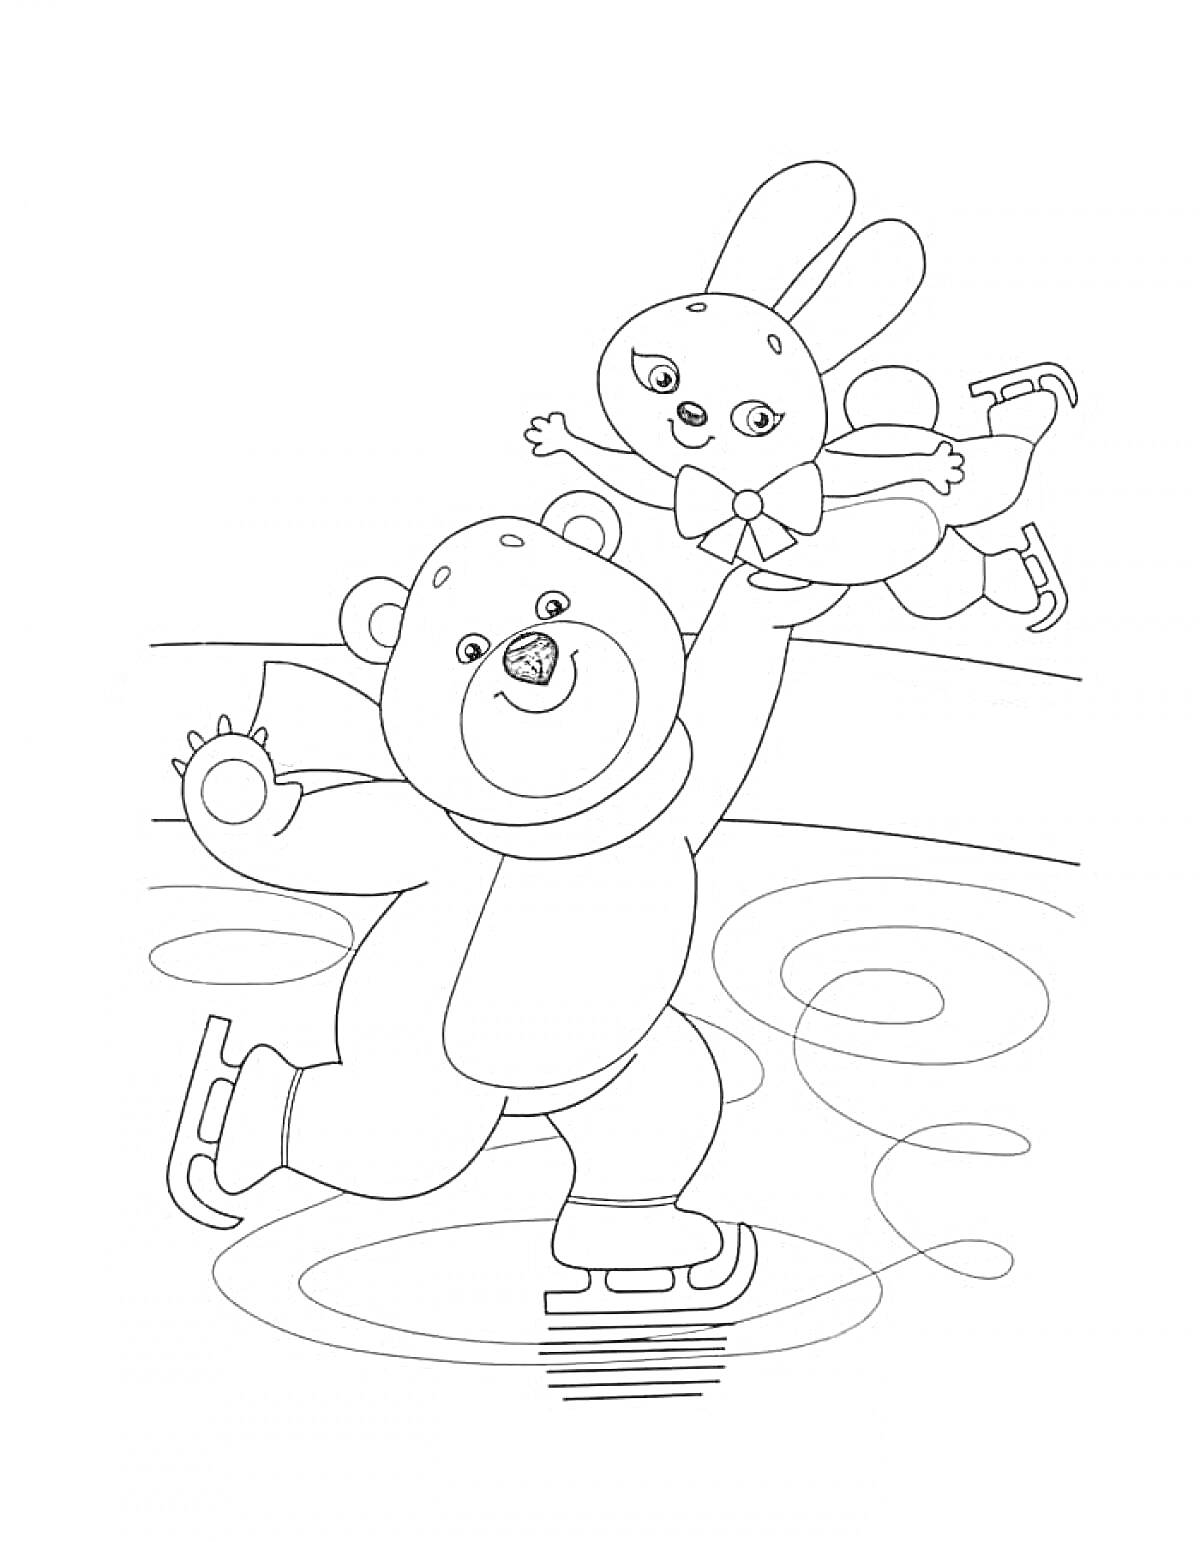 Раскраска Медведь и заяц катаются на коньках на катке